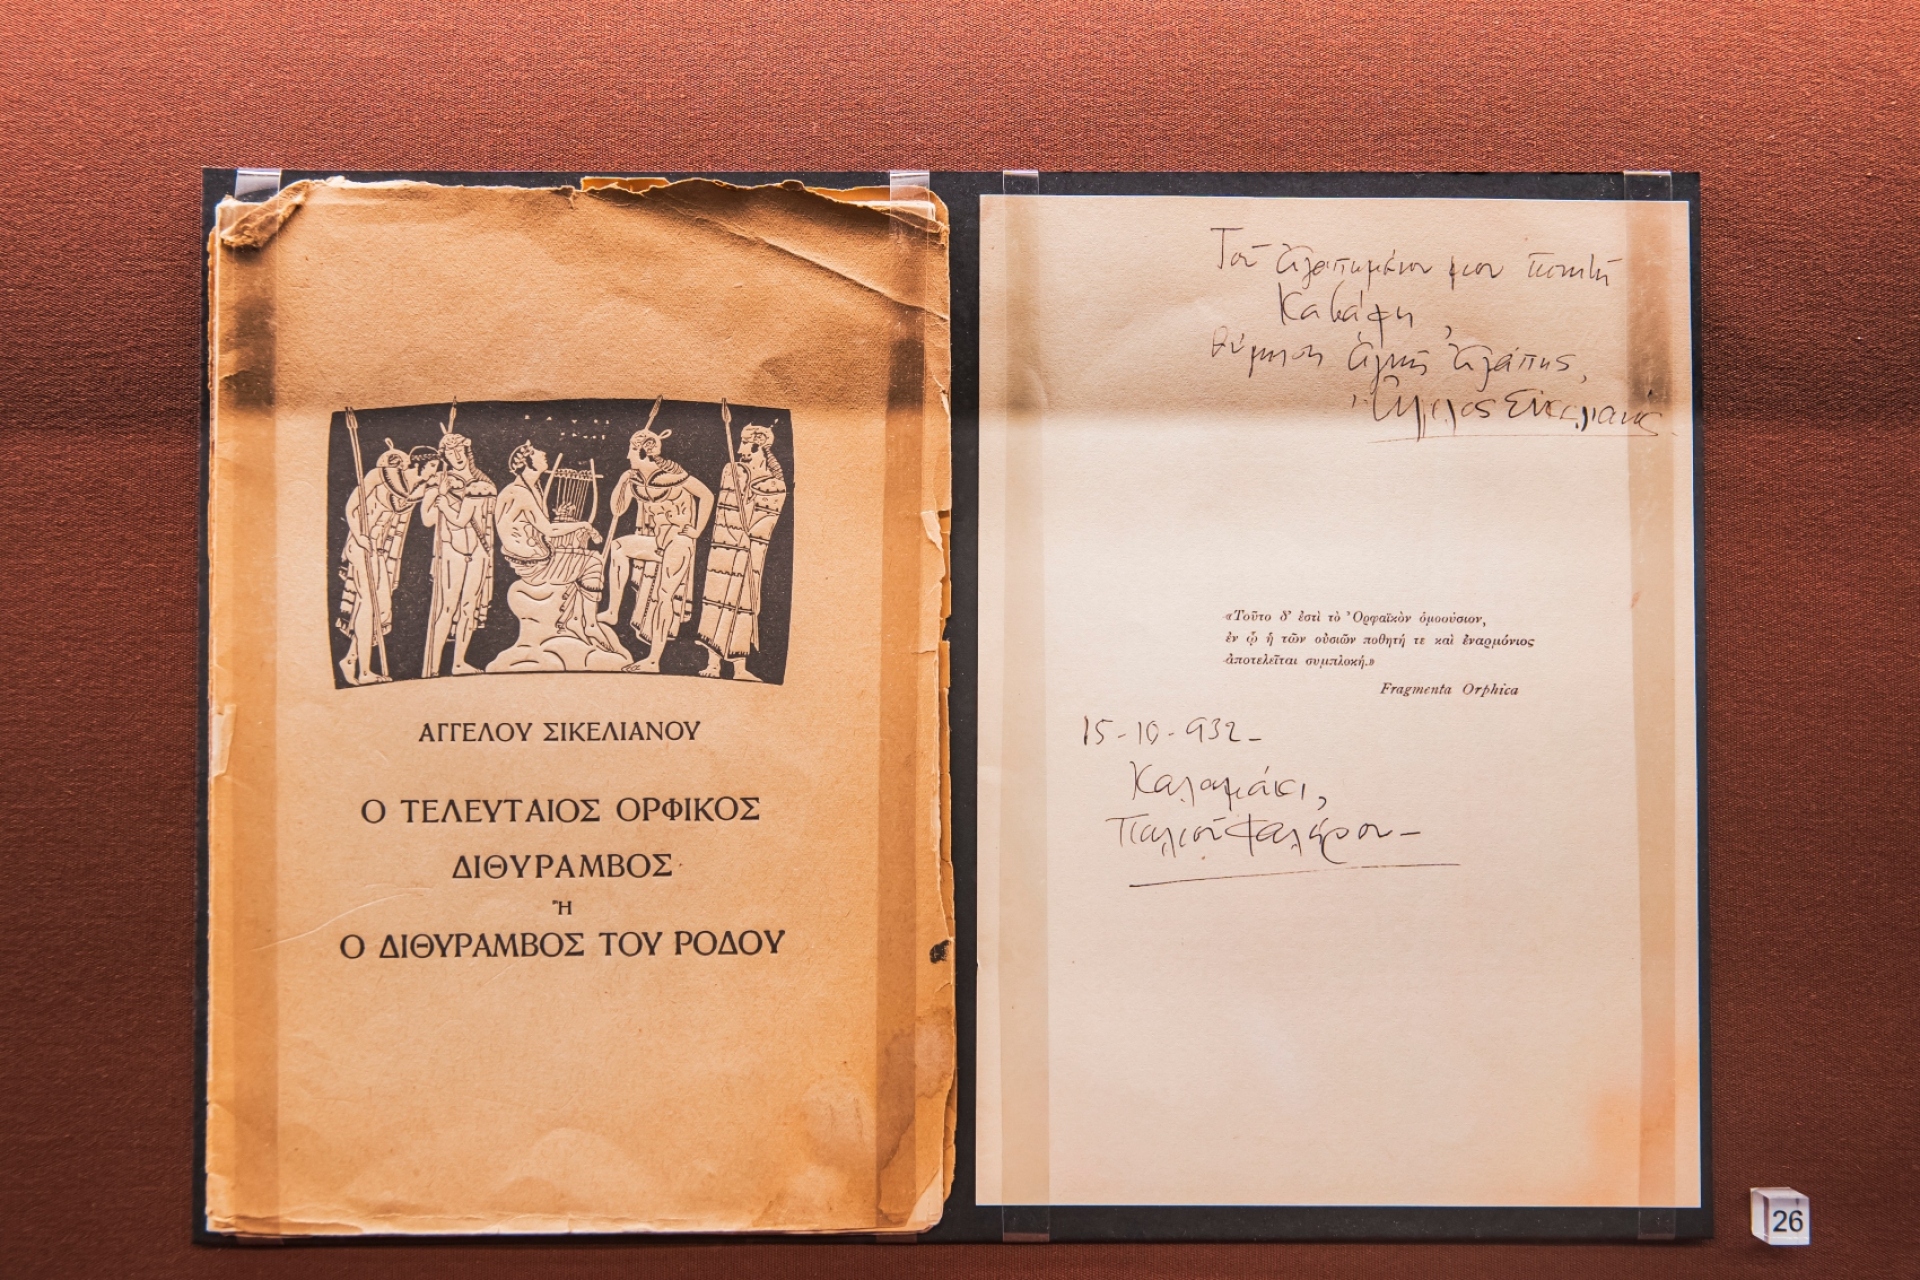 Το βιβλίο "Ο τελευταίος Ορφικός Διθύραμβος" του Άγγελου Σικελιανού με αφιέρωση στον Κ.Π. Καβάφη